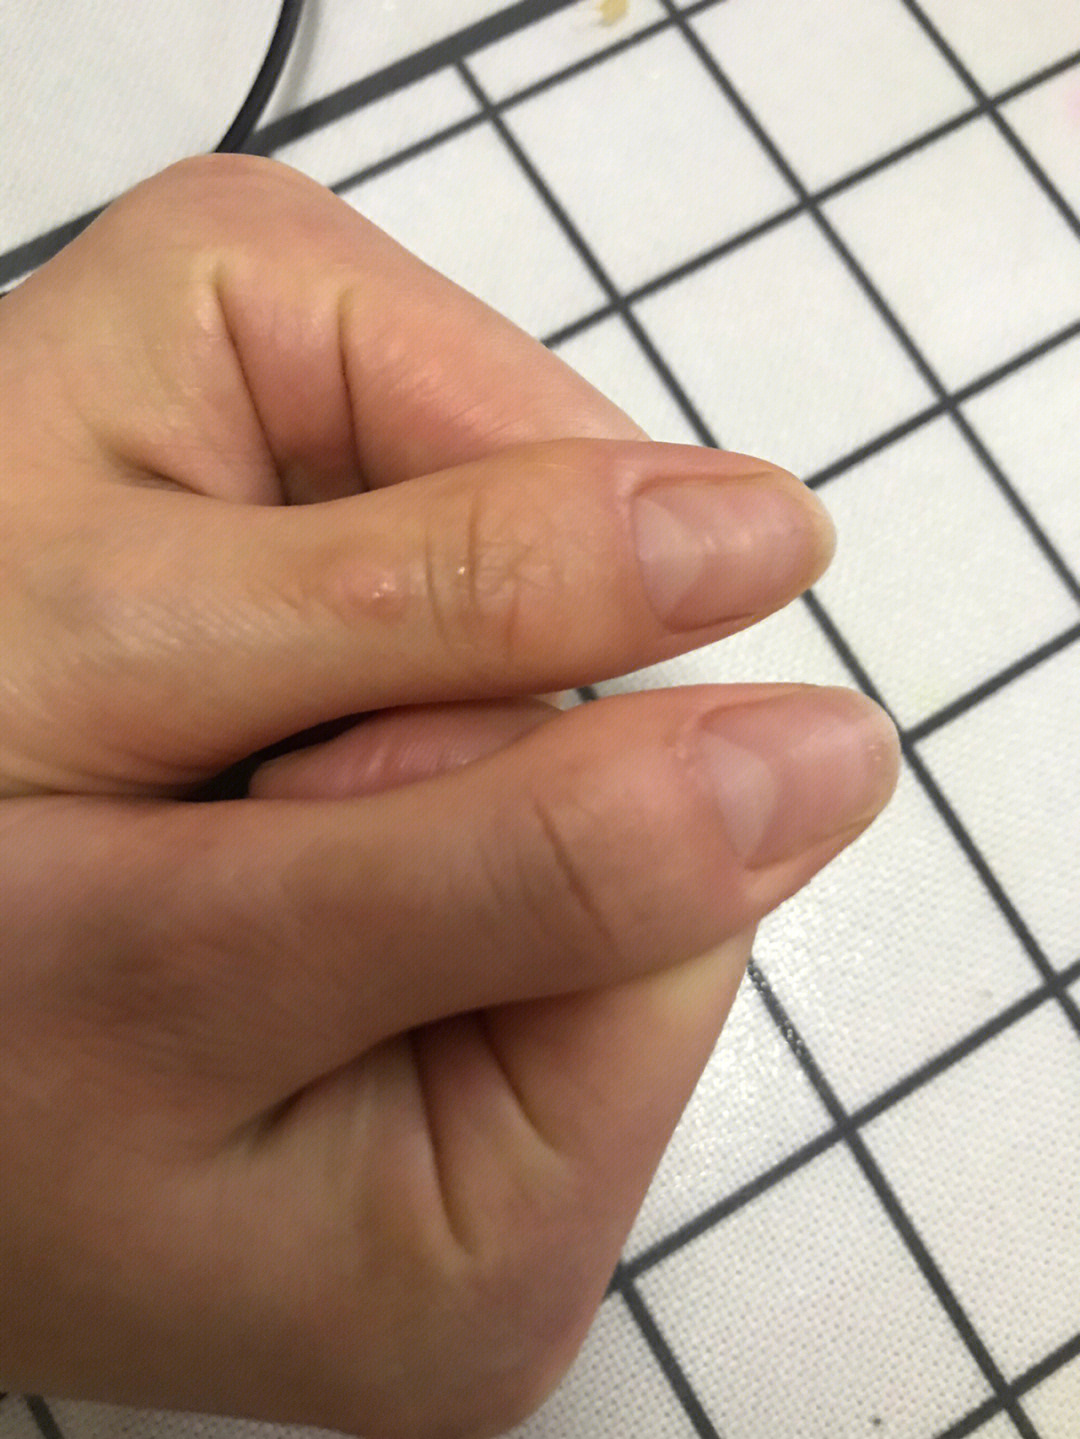 一样凹凸不平的,其他的都比较正常就是大姆手指这样,两个都是拇指的